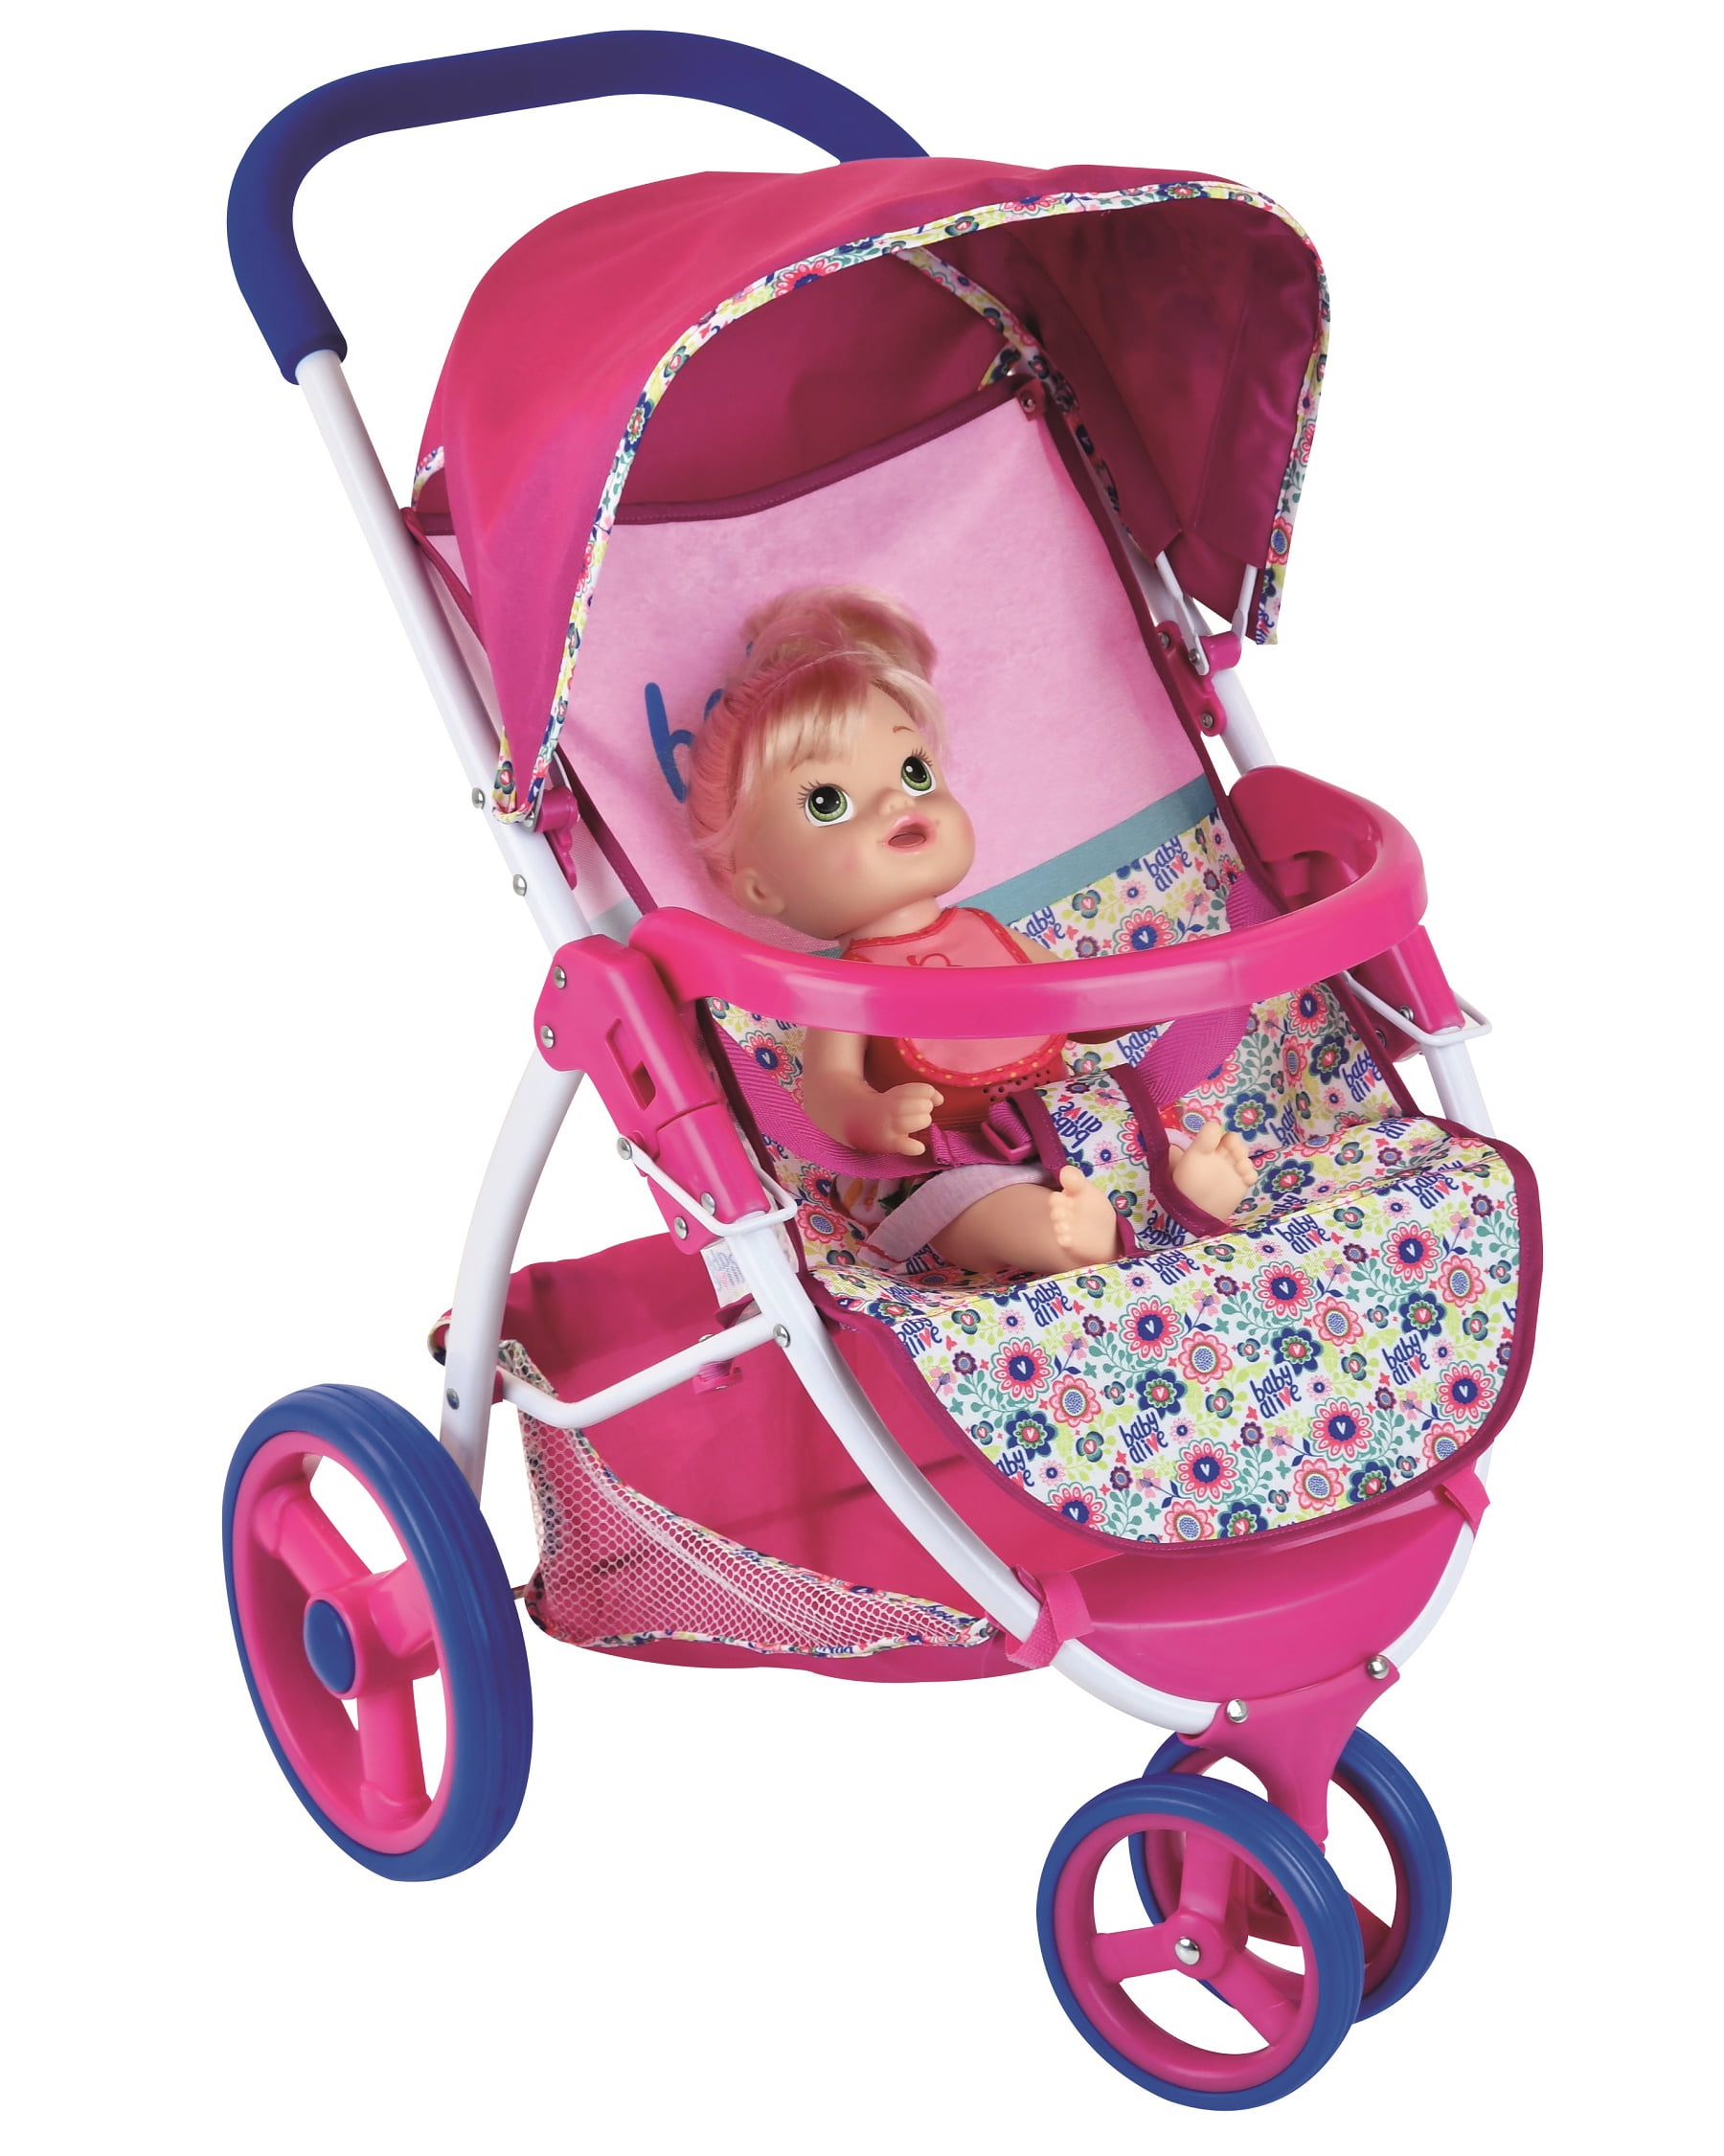 walmart baby toy stroller